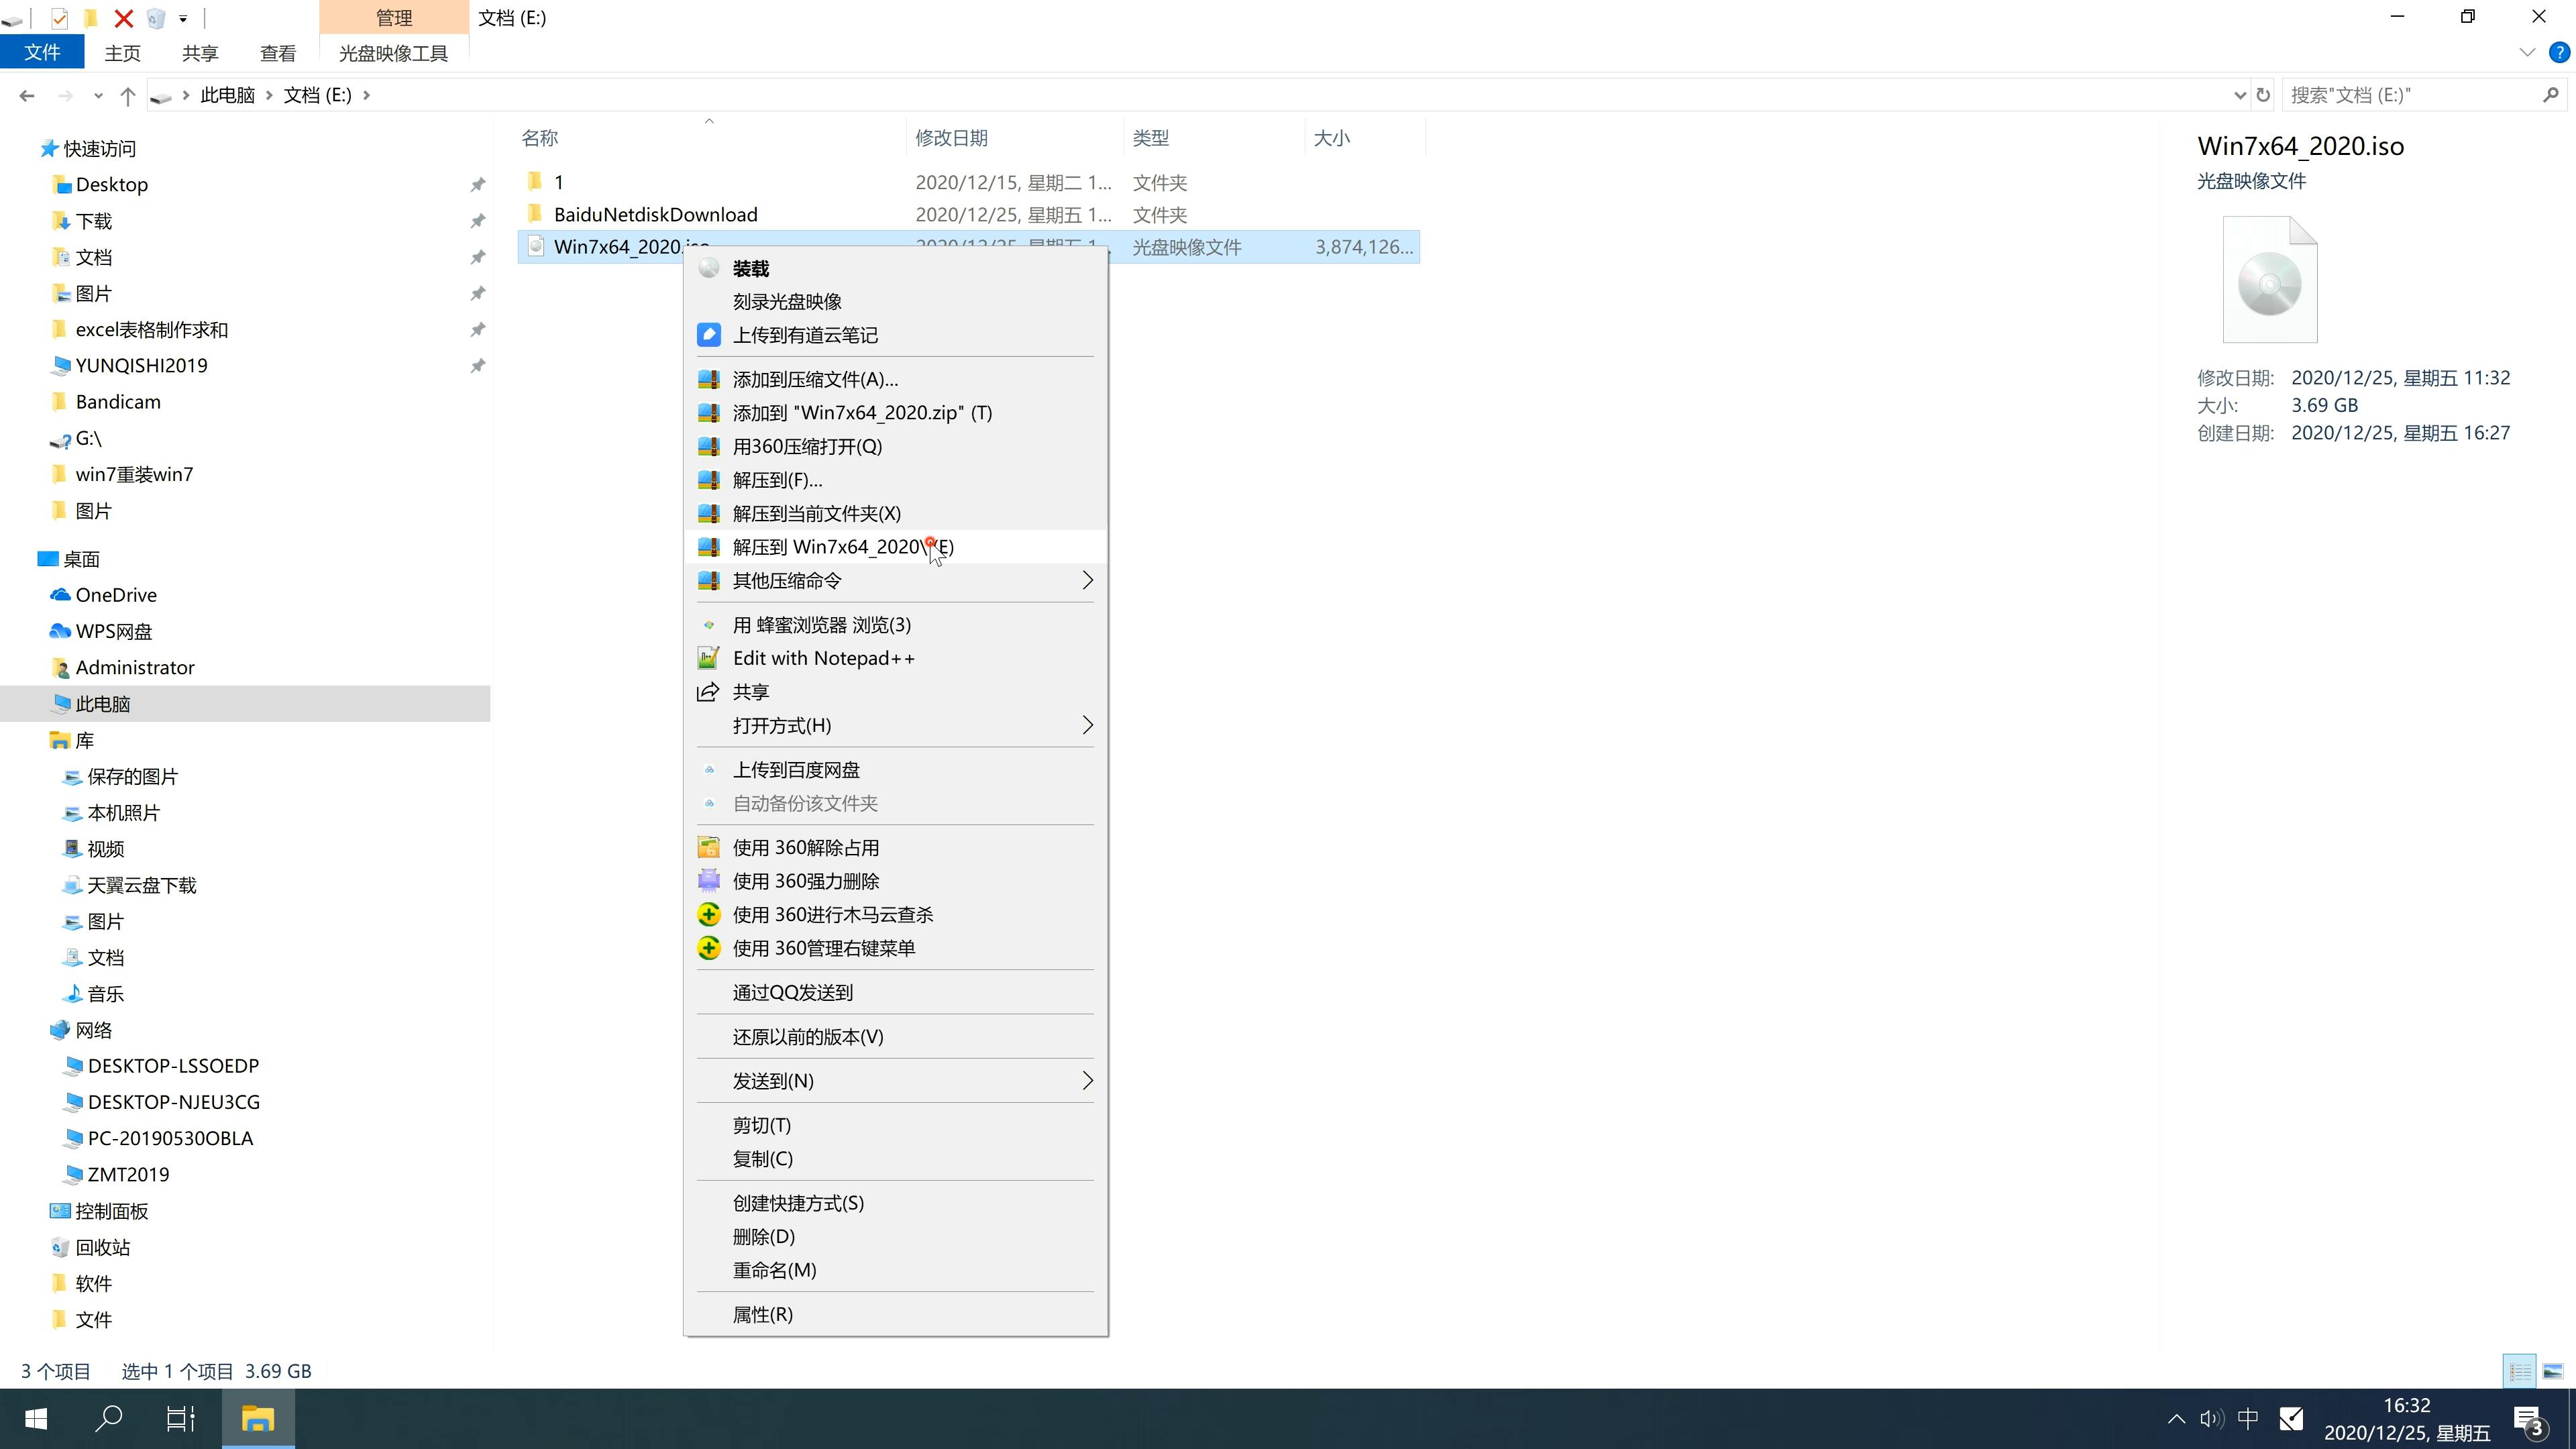 戴尔笔记本专用系统 GHOST windows7 64 SP1 免费正式版 V2021.05(2)